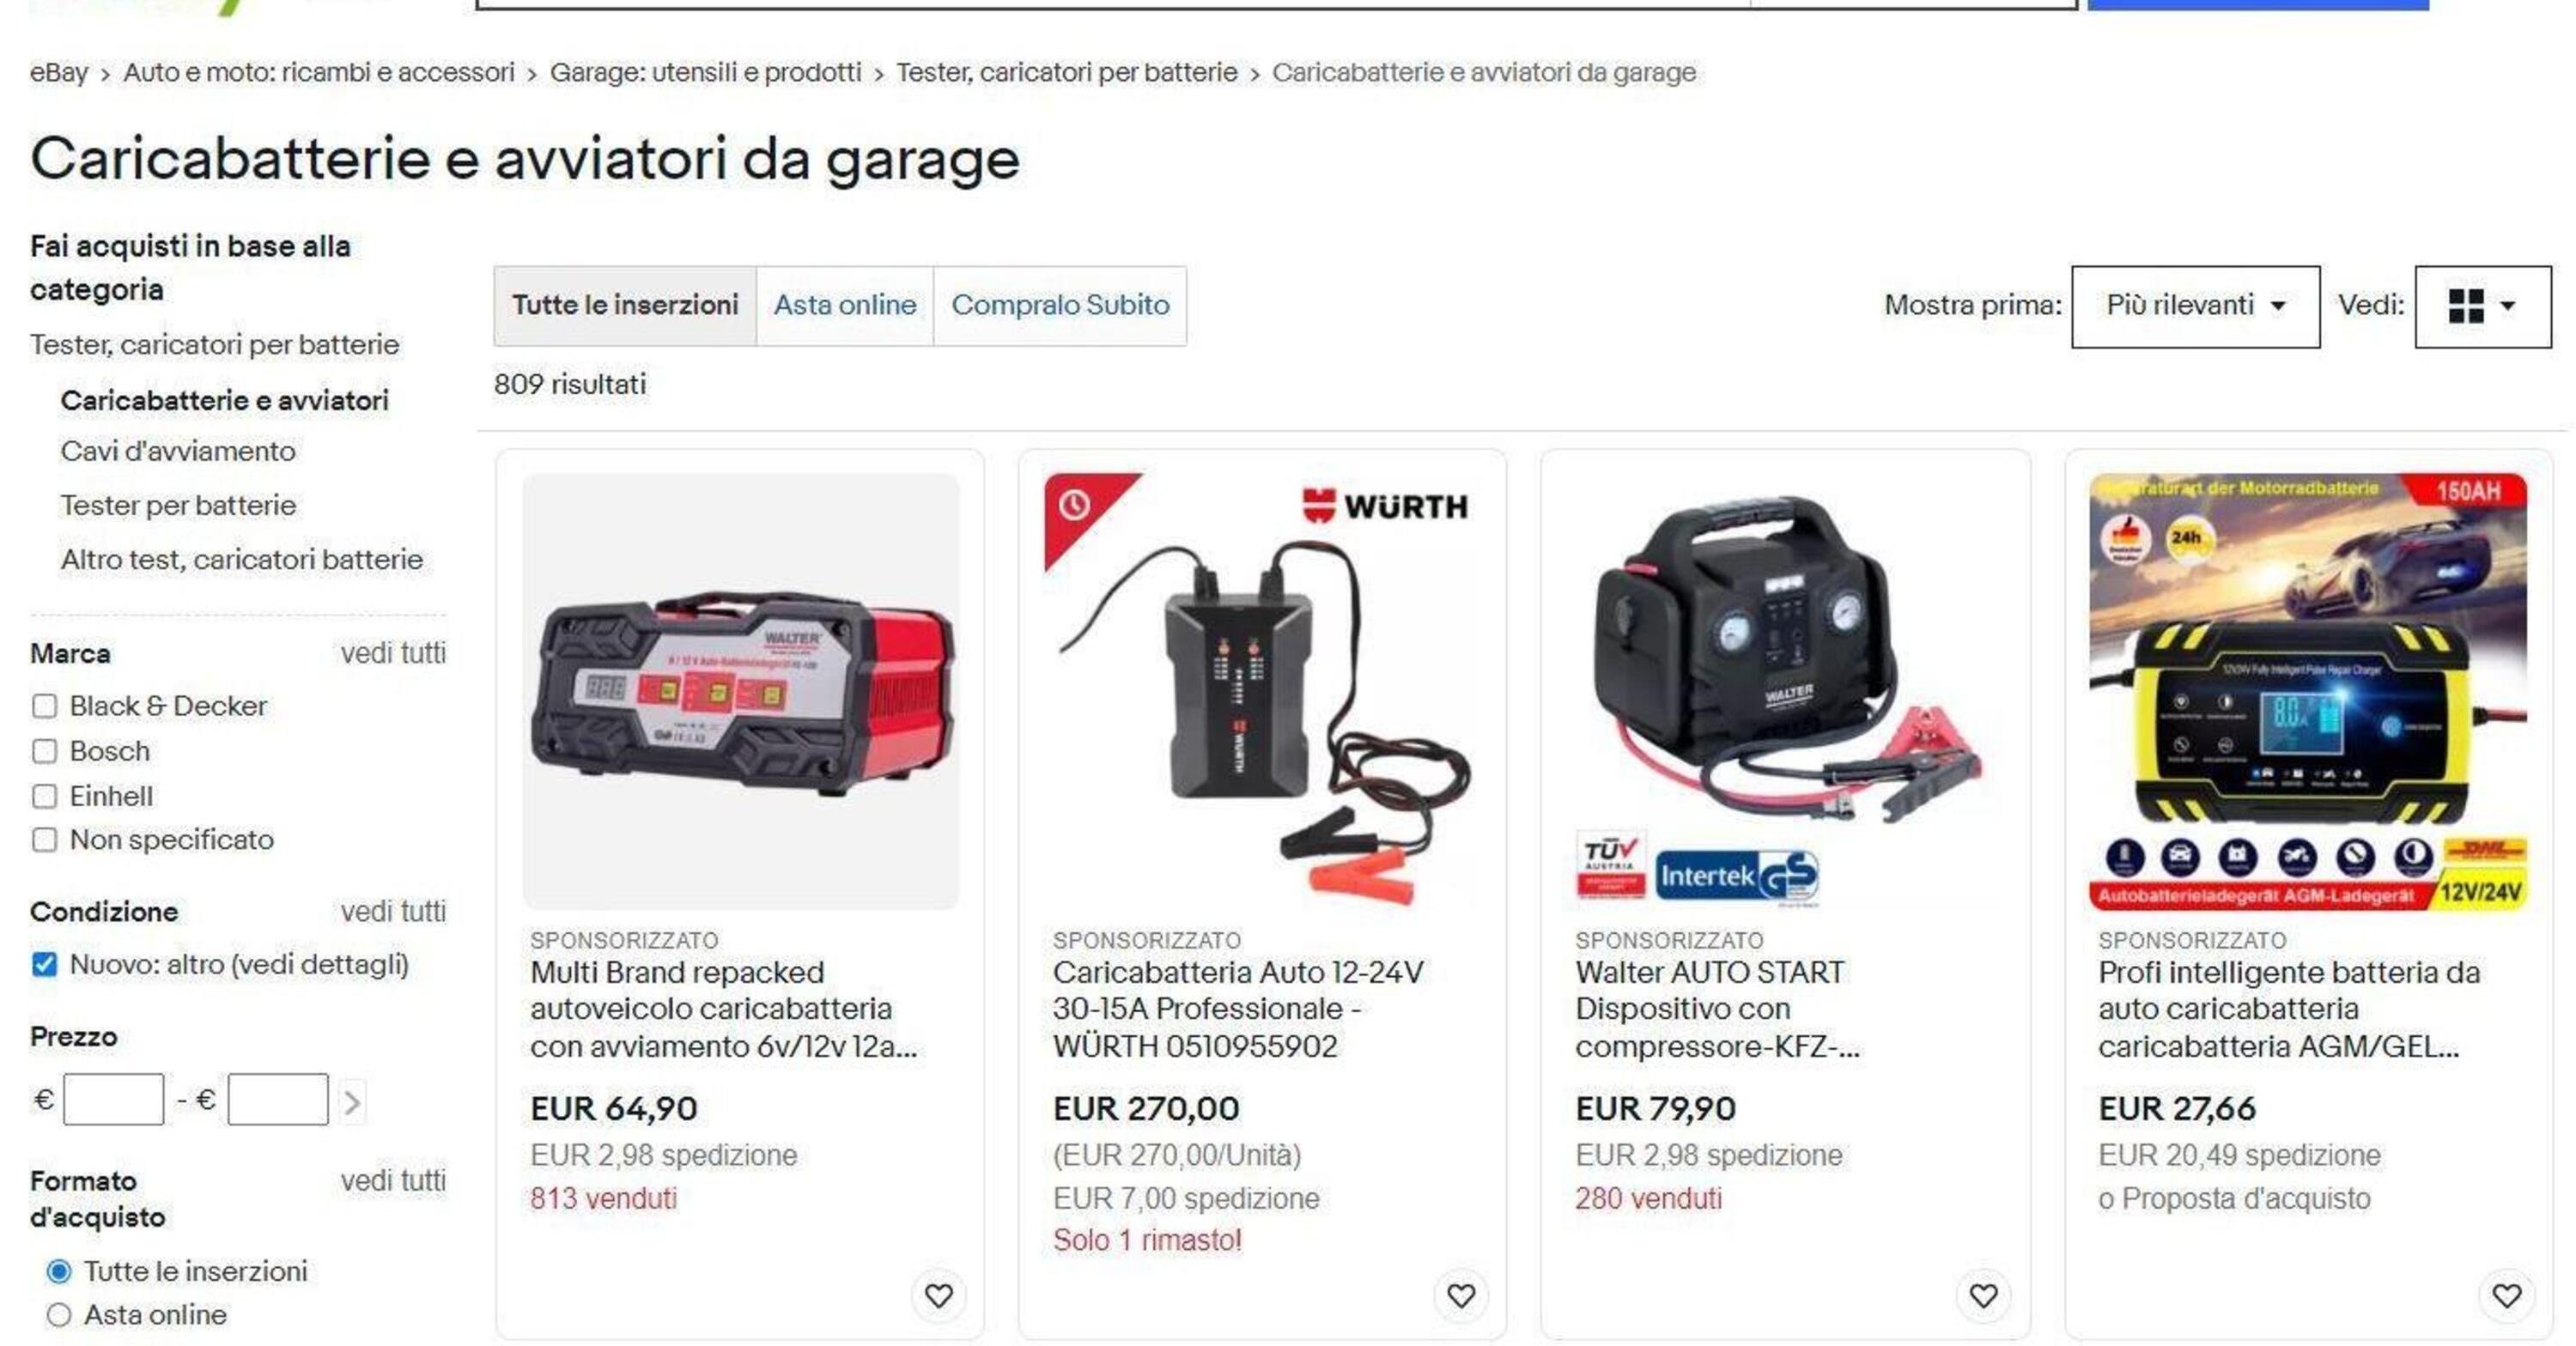 Guida all&rsquo;acquisto: trovare i migliori caricabatteria e avviatori per auto grazie a eBay